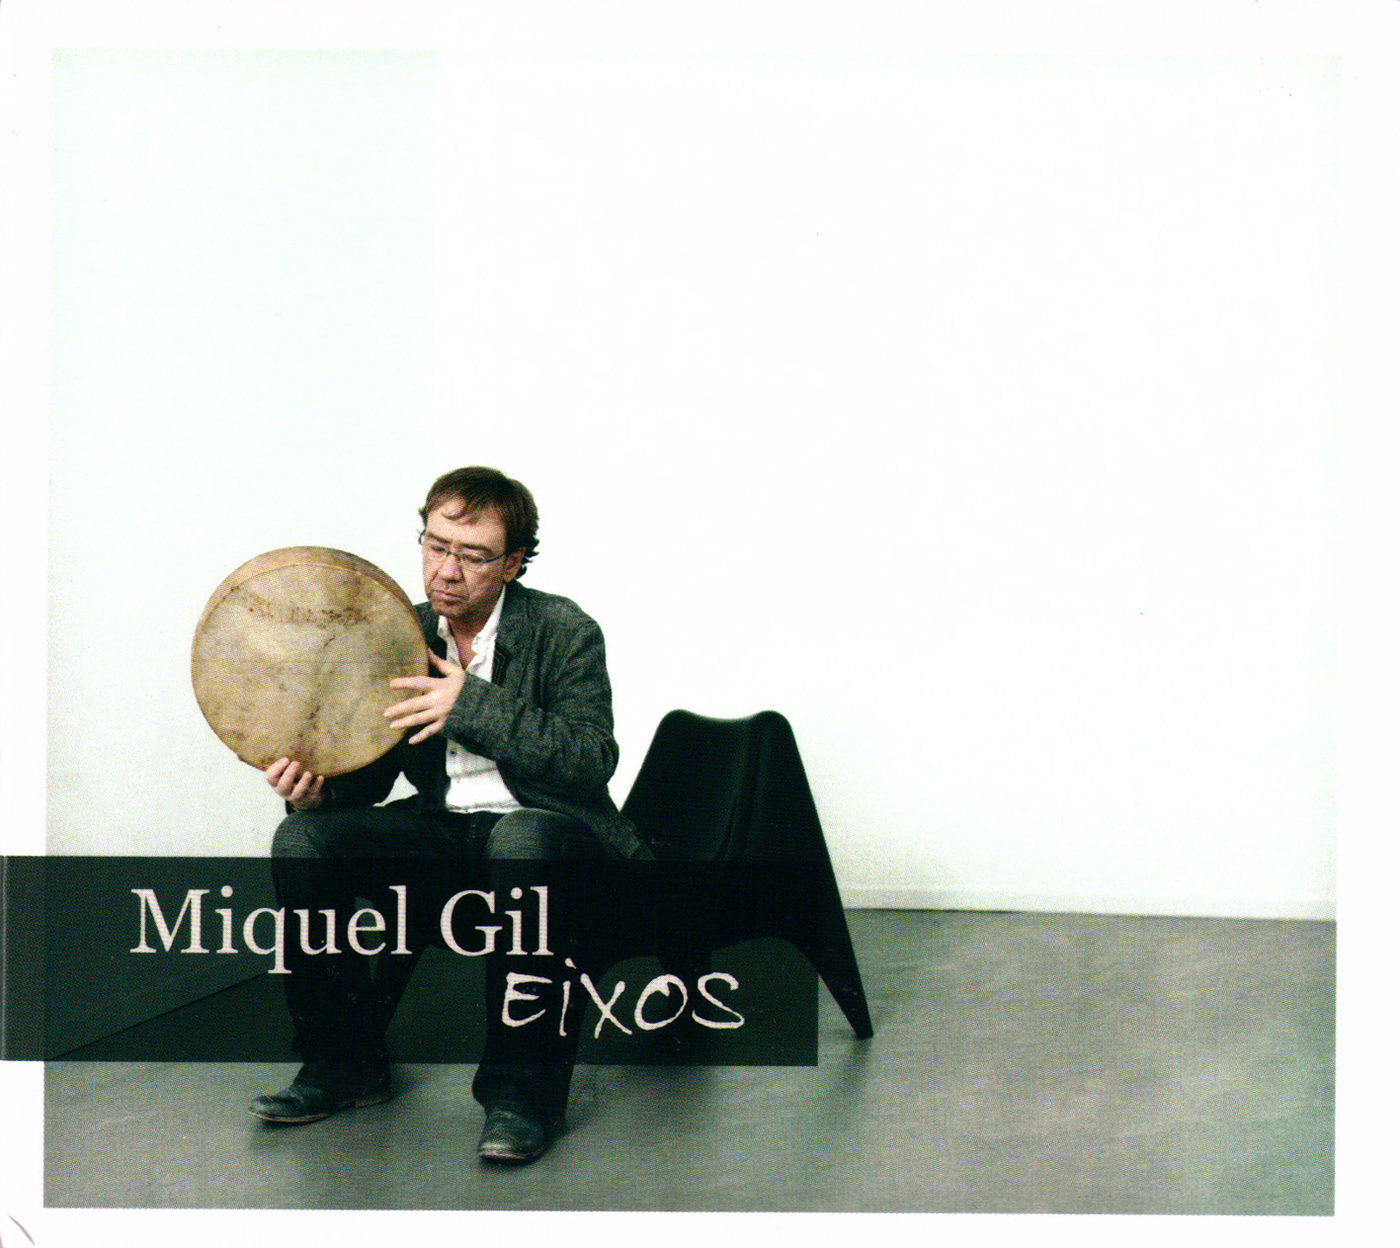 Miquel Gil - Eixos | musica en valencià